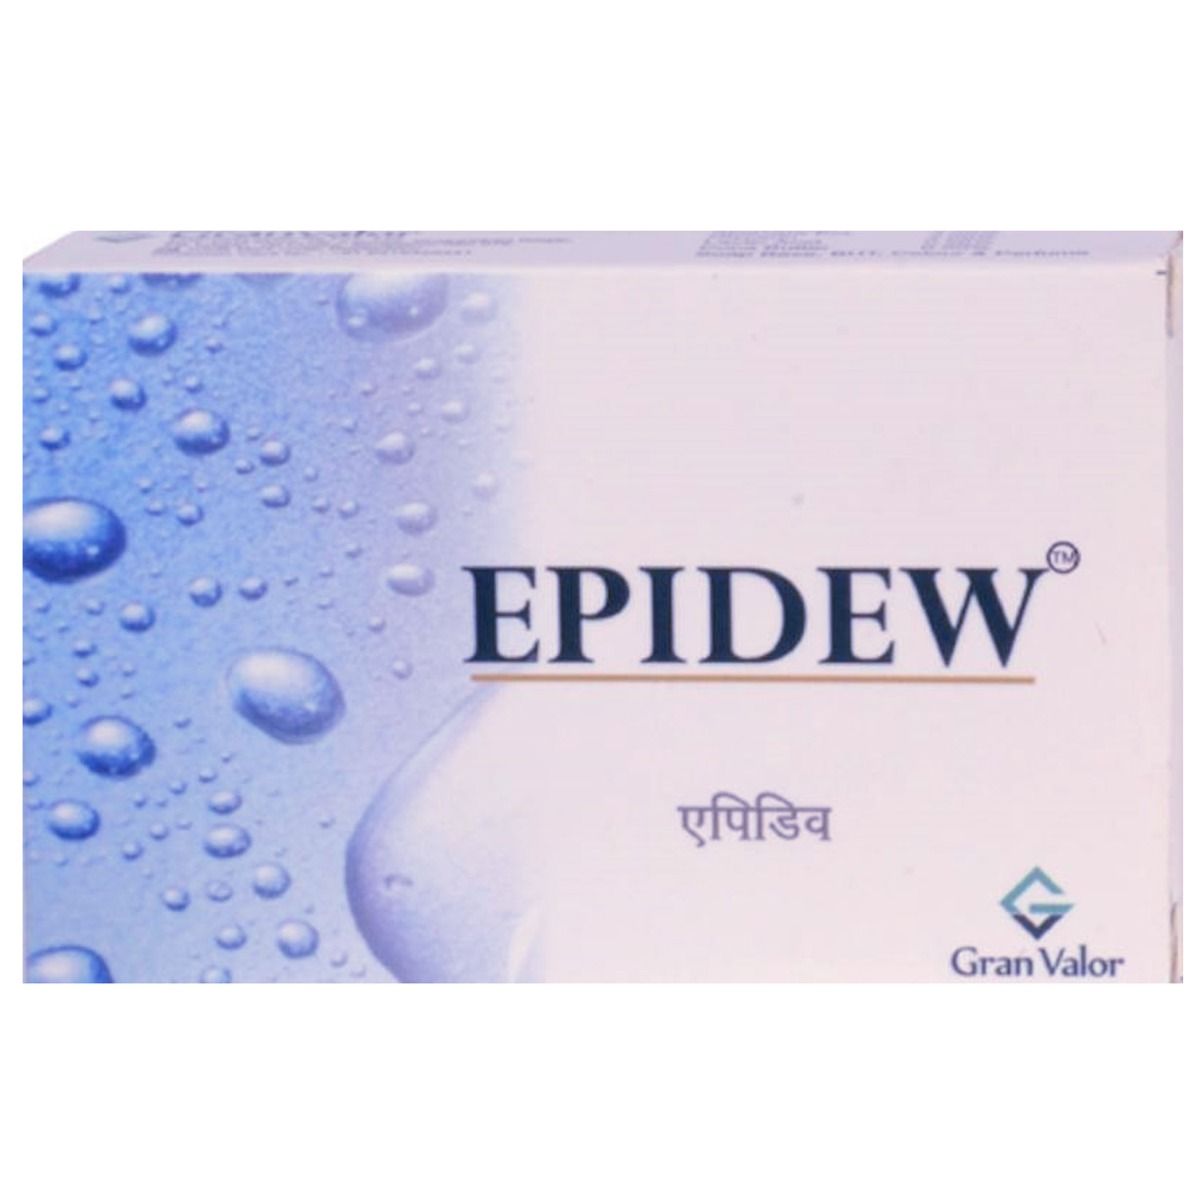 Buy Epidew Soap, 75 gm Online